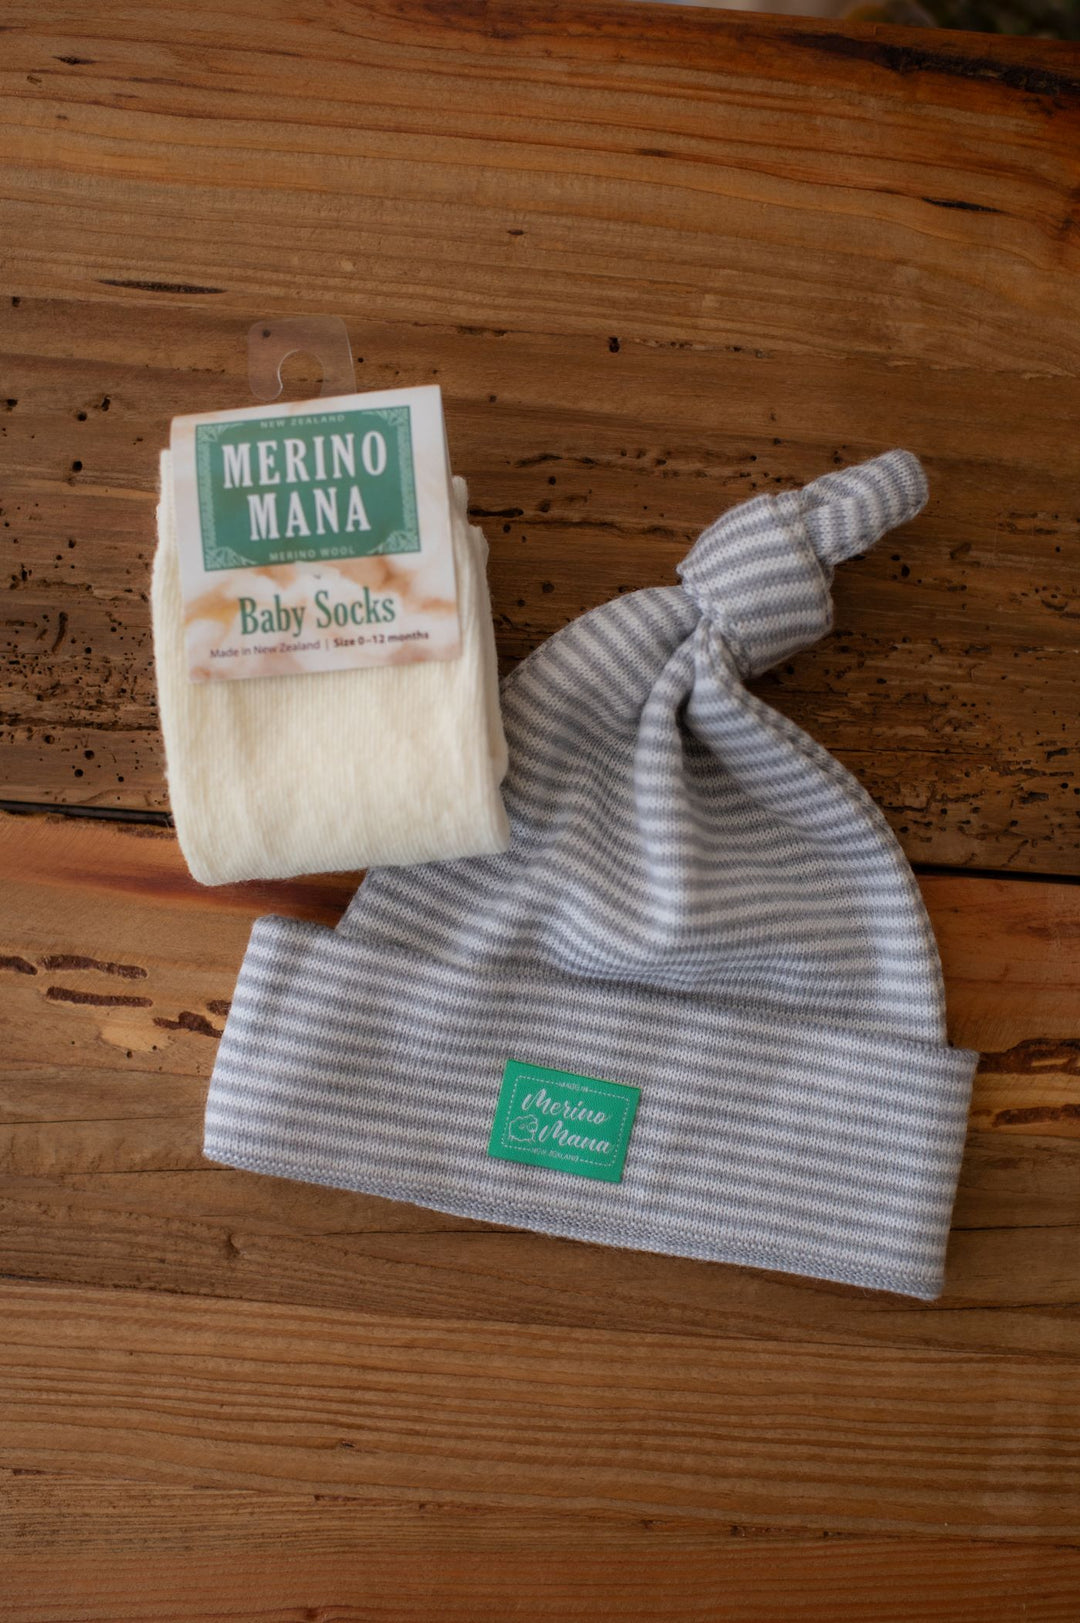 Merino Wool Top Knot Baby Hat and Merino Wool Baby Socks